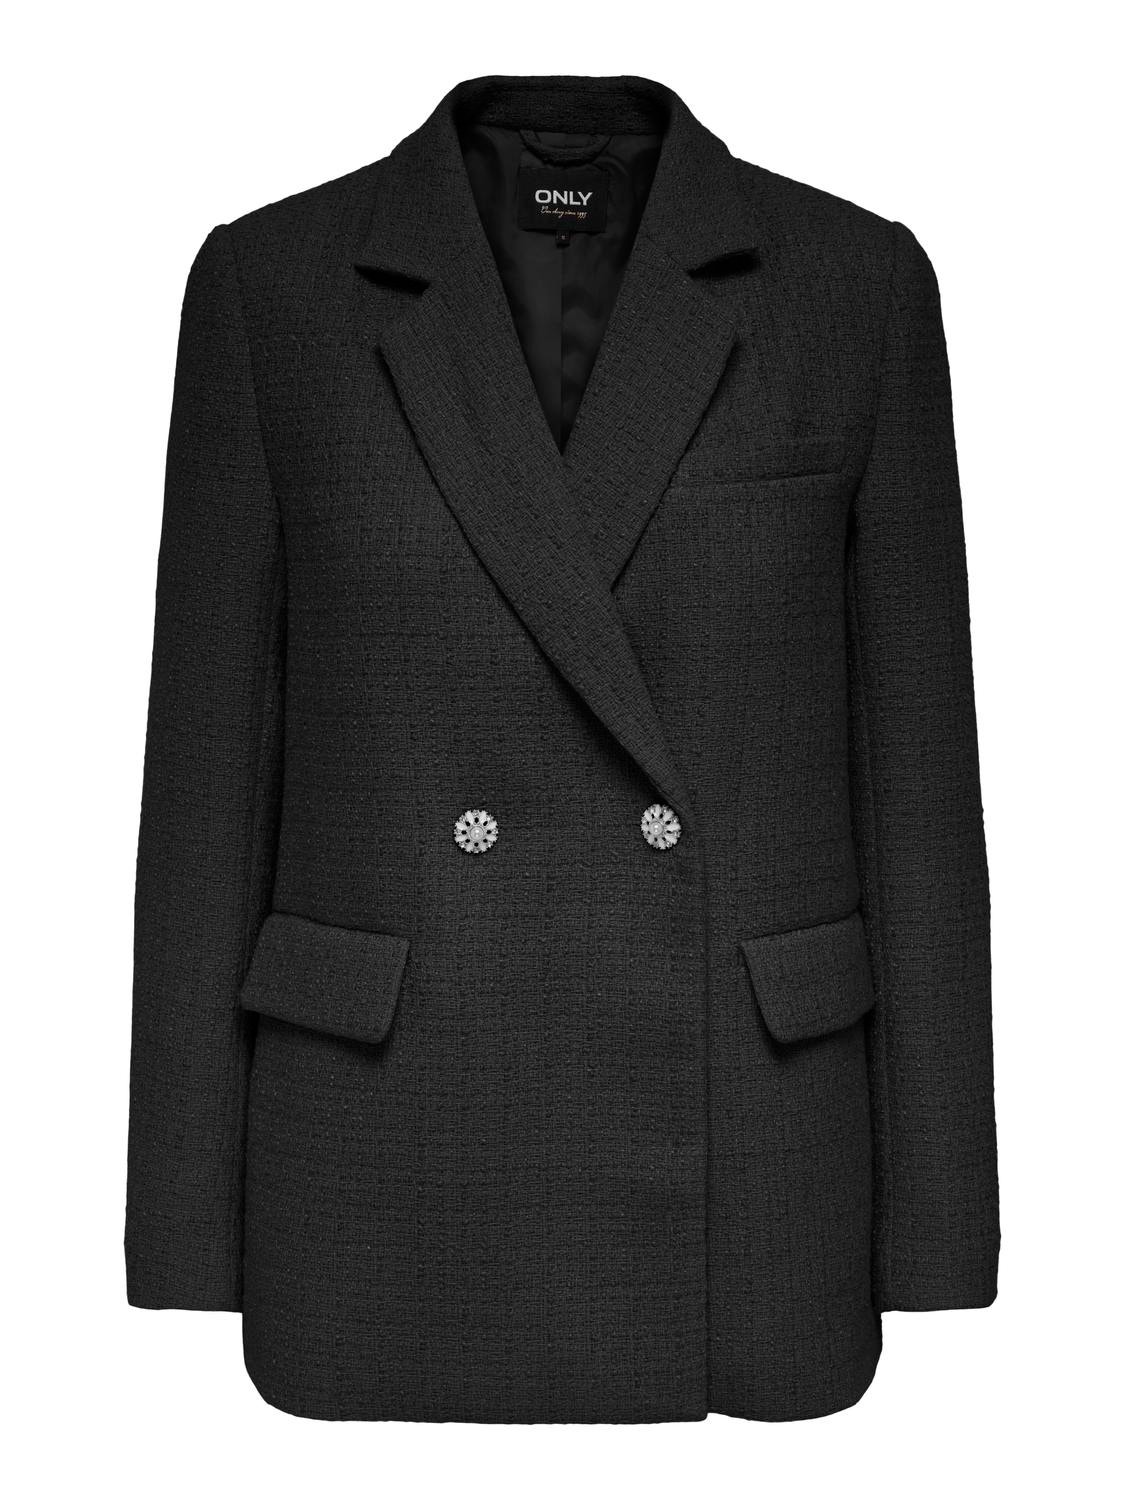 ONLY Classic blazer -Black - 15293957